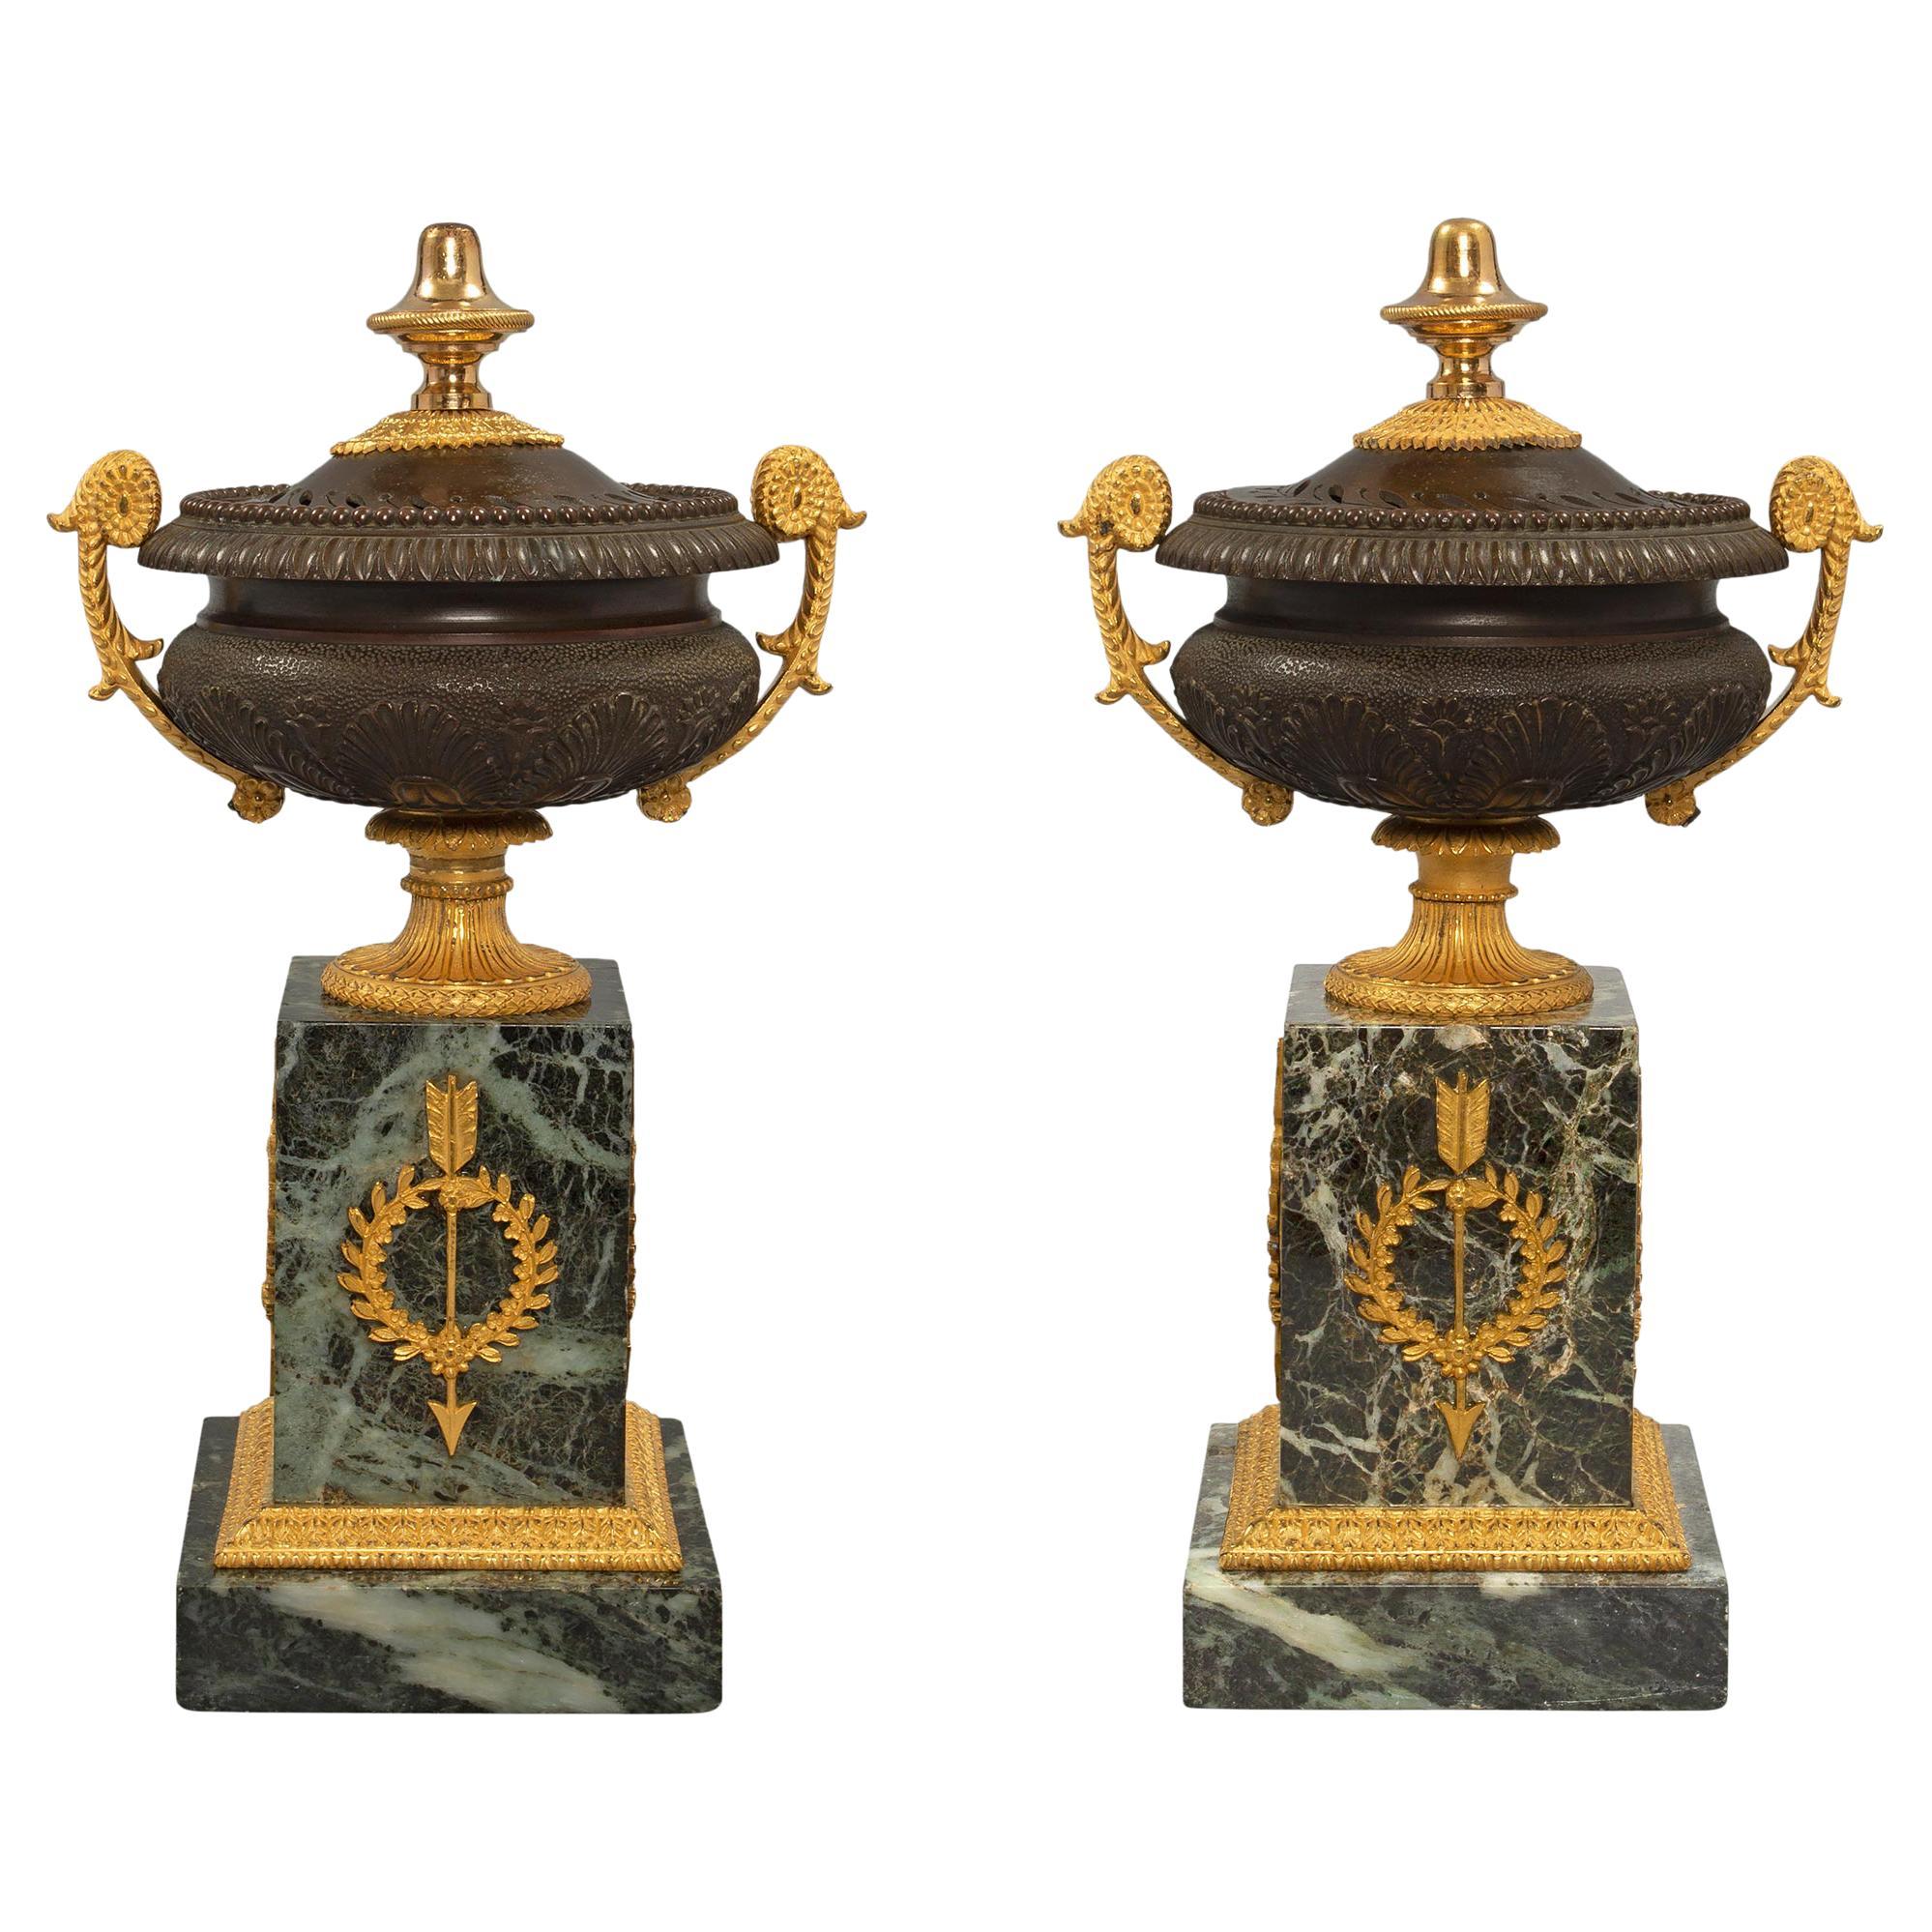 Paire d'urnes Pourri en bronze et marbre de style Charles X du 19ème siècle français